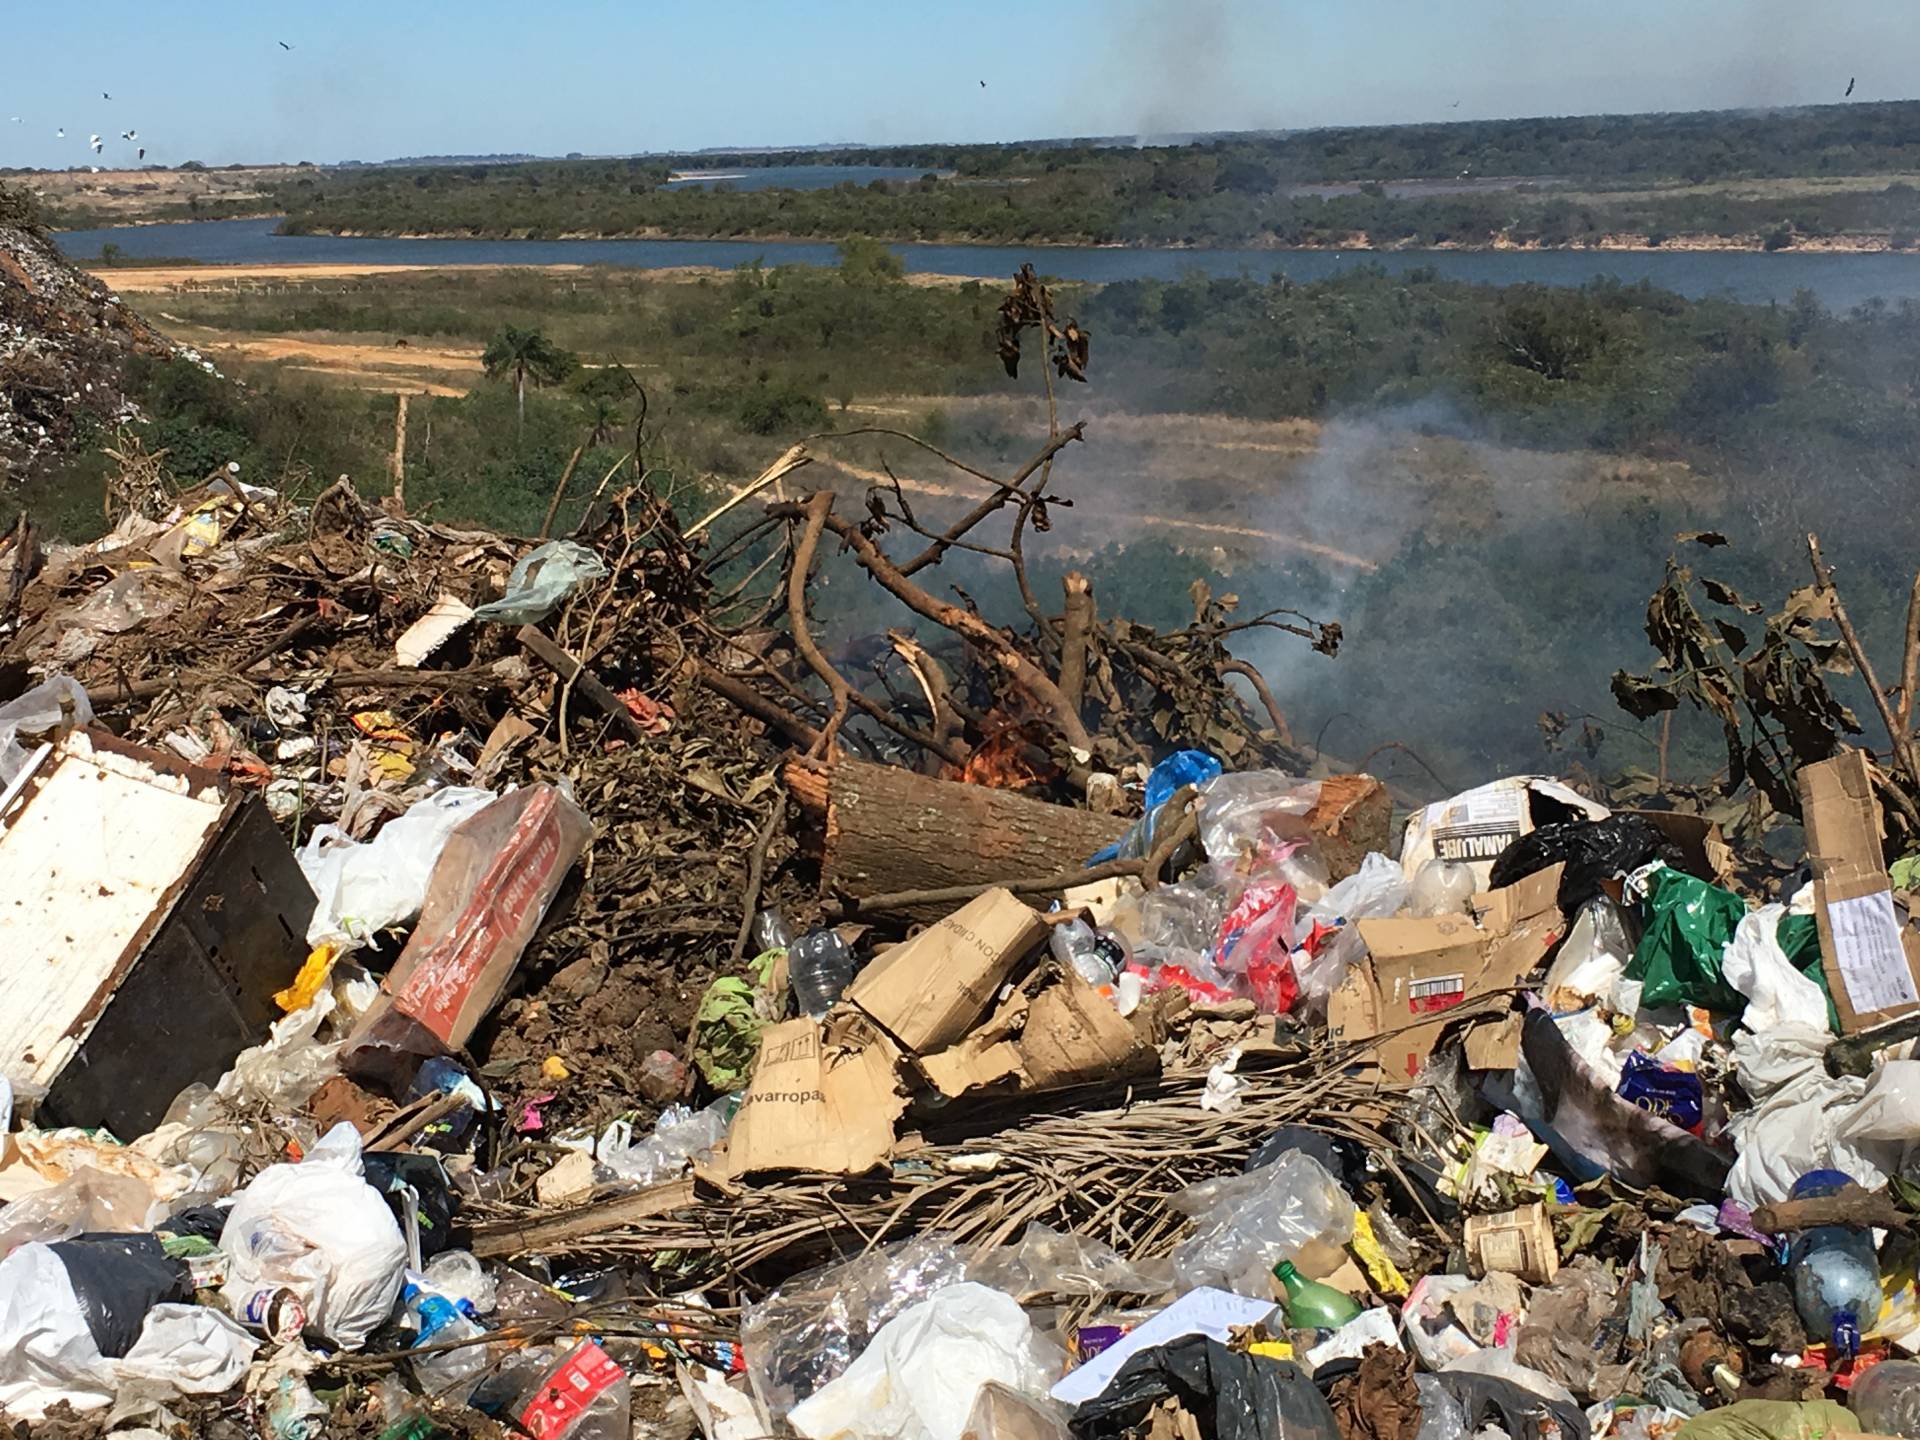 Müll in der Landschaft in Argentinien.